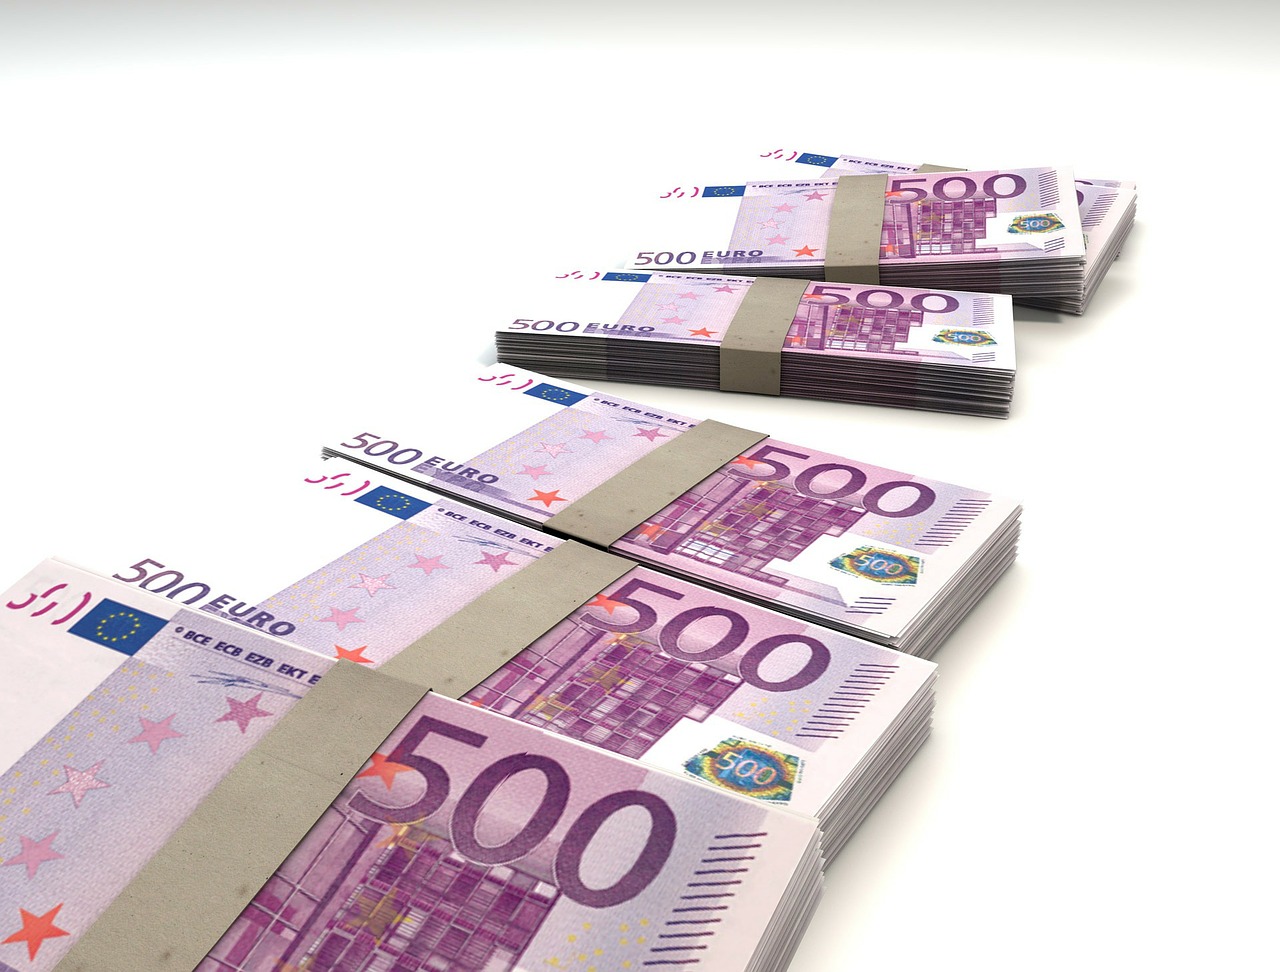 Građani bankama duguju 1,2 milijarde eura, najčešće uzimamo keš kredite